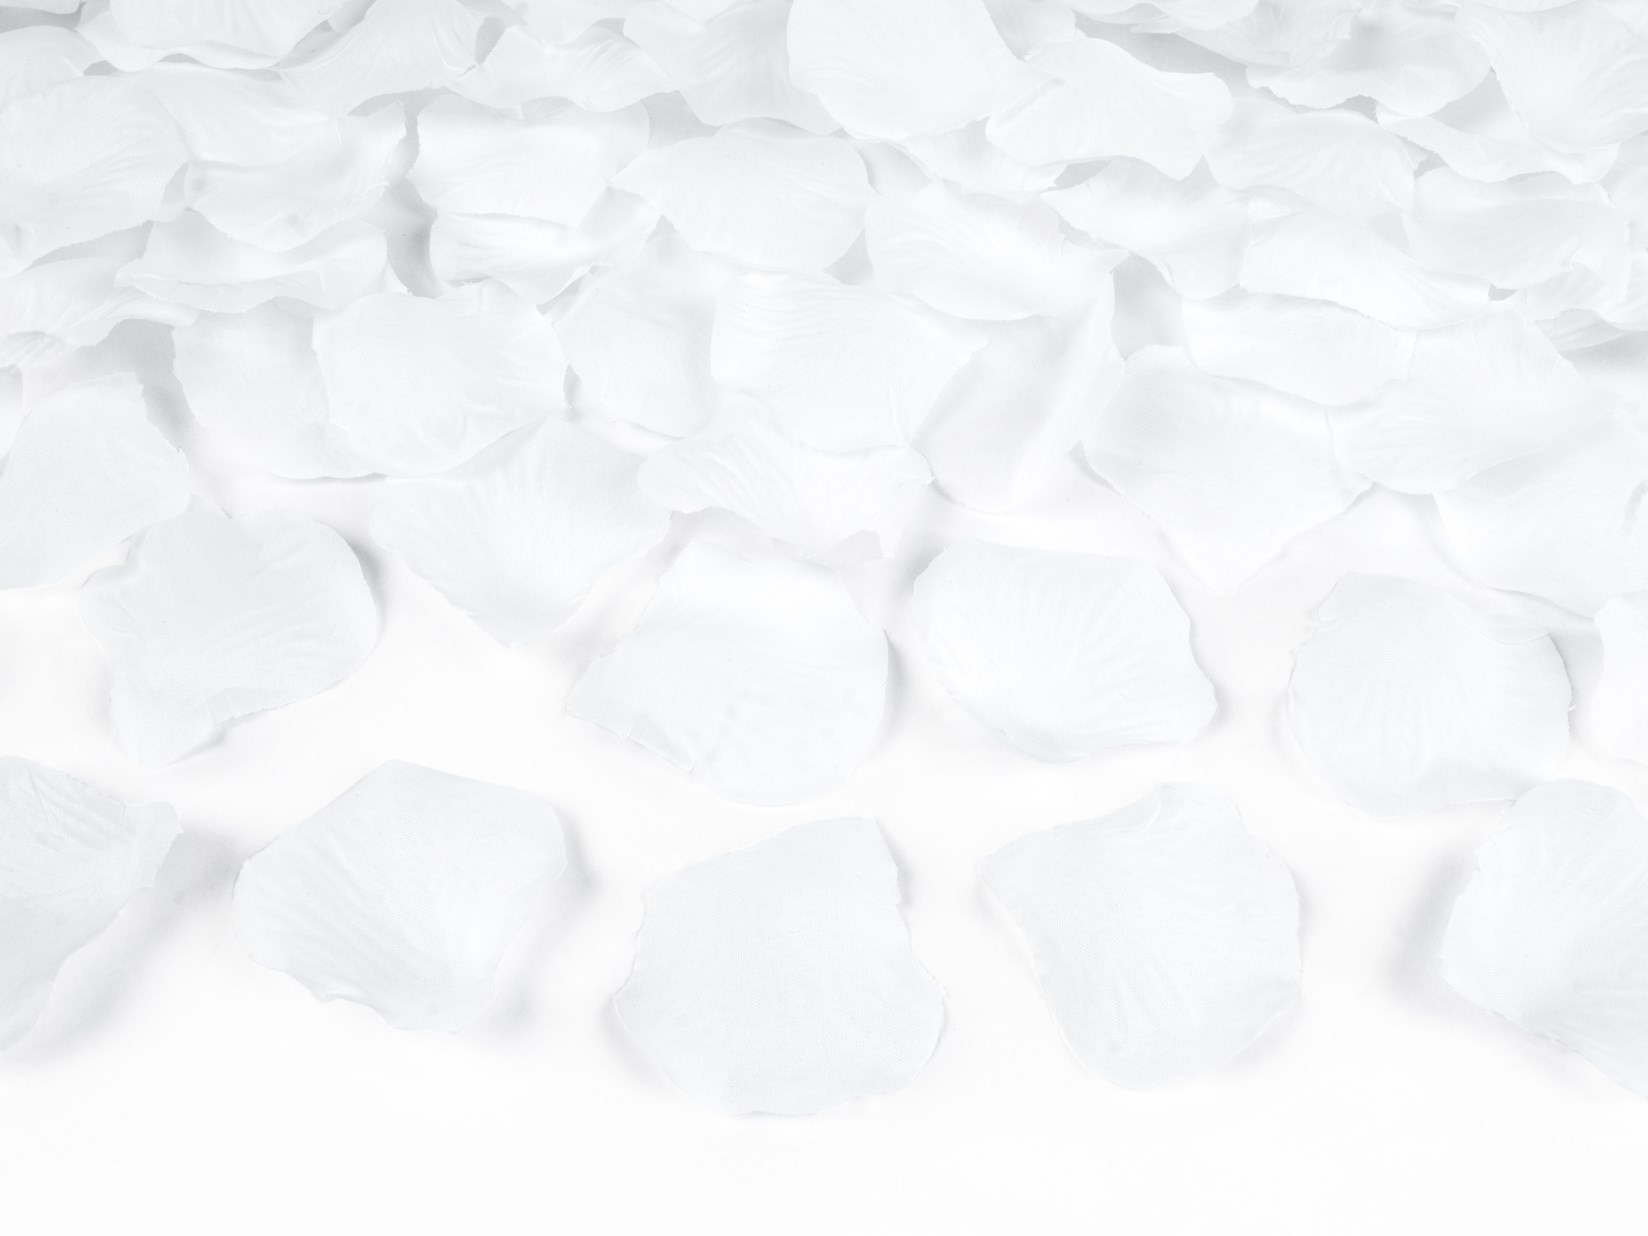 Υφασμάτινα Λευκά Ροδοπέταλα – 100 Τεμάχια